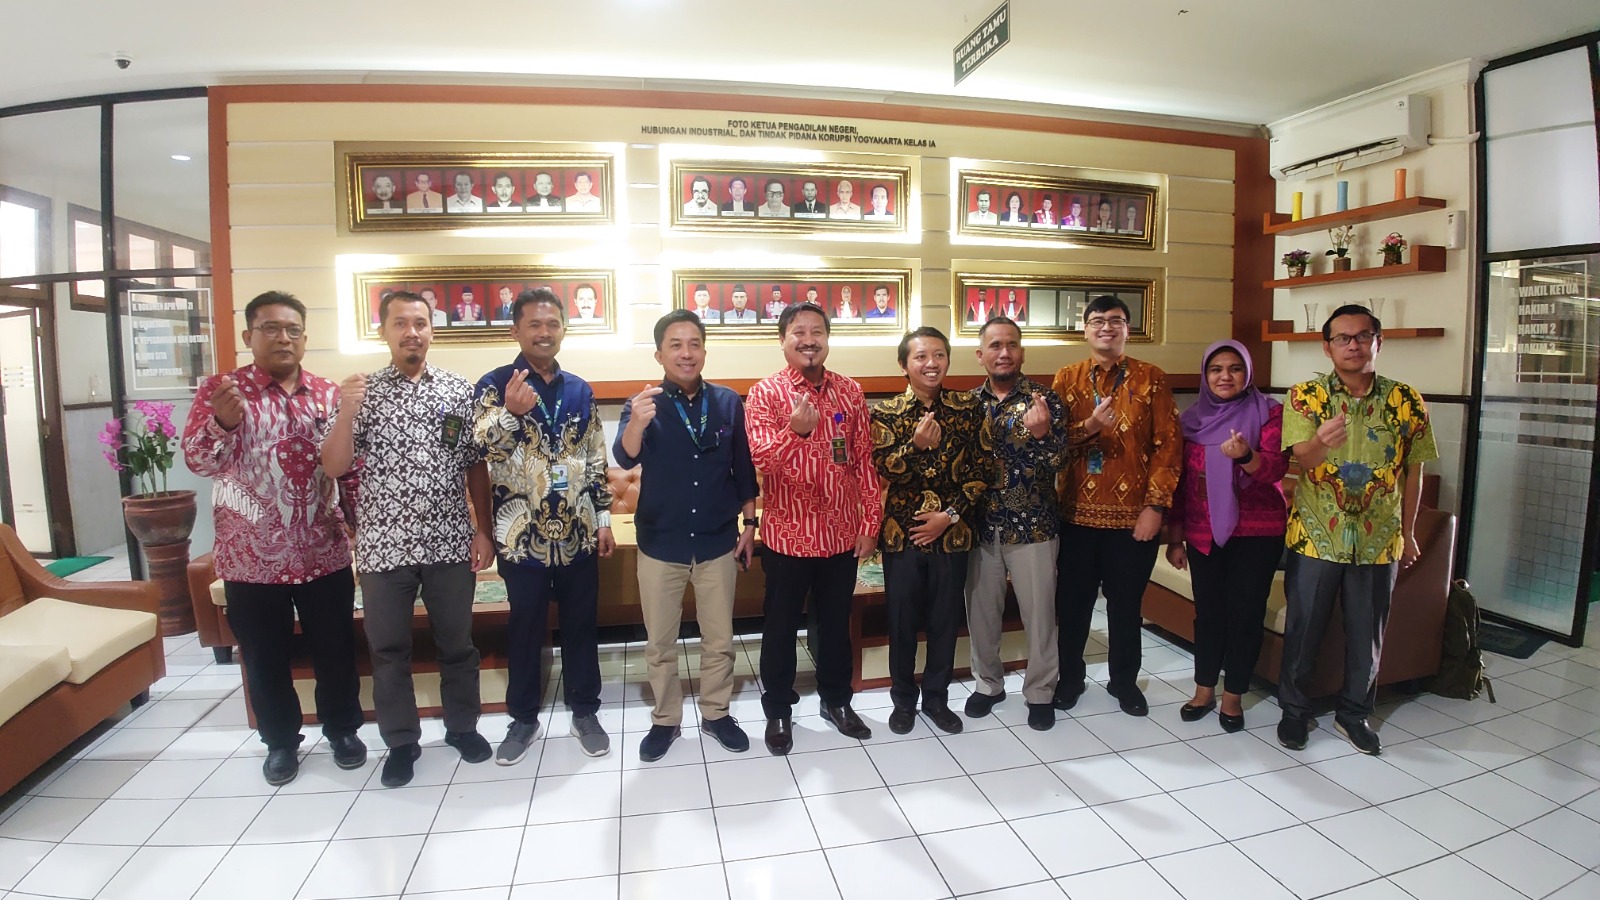 Kunjungan dan Koordinasi KEMENKOPUKM dengan Pengadilan Negeri Yogyakarta dan POSBAKUM